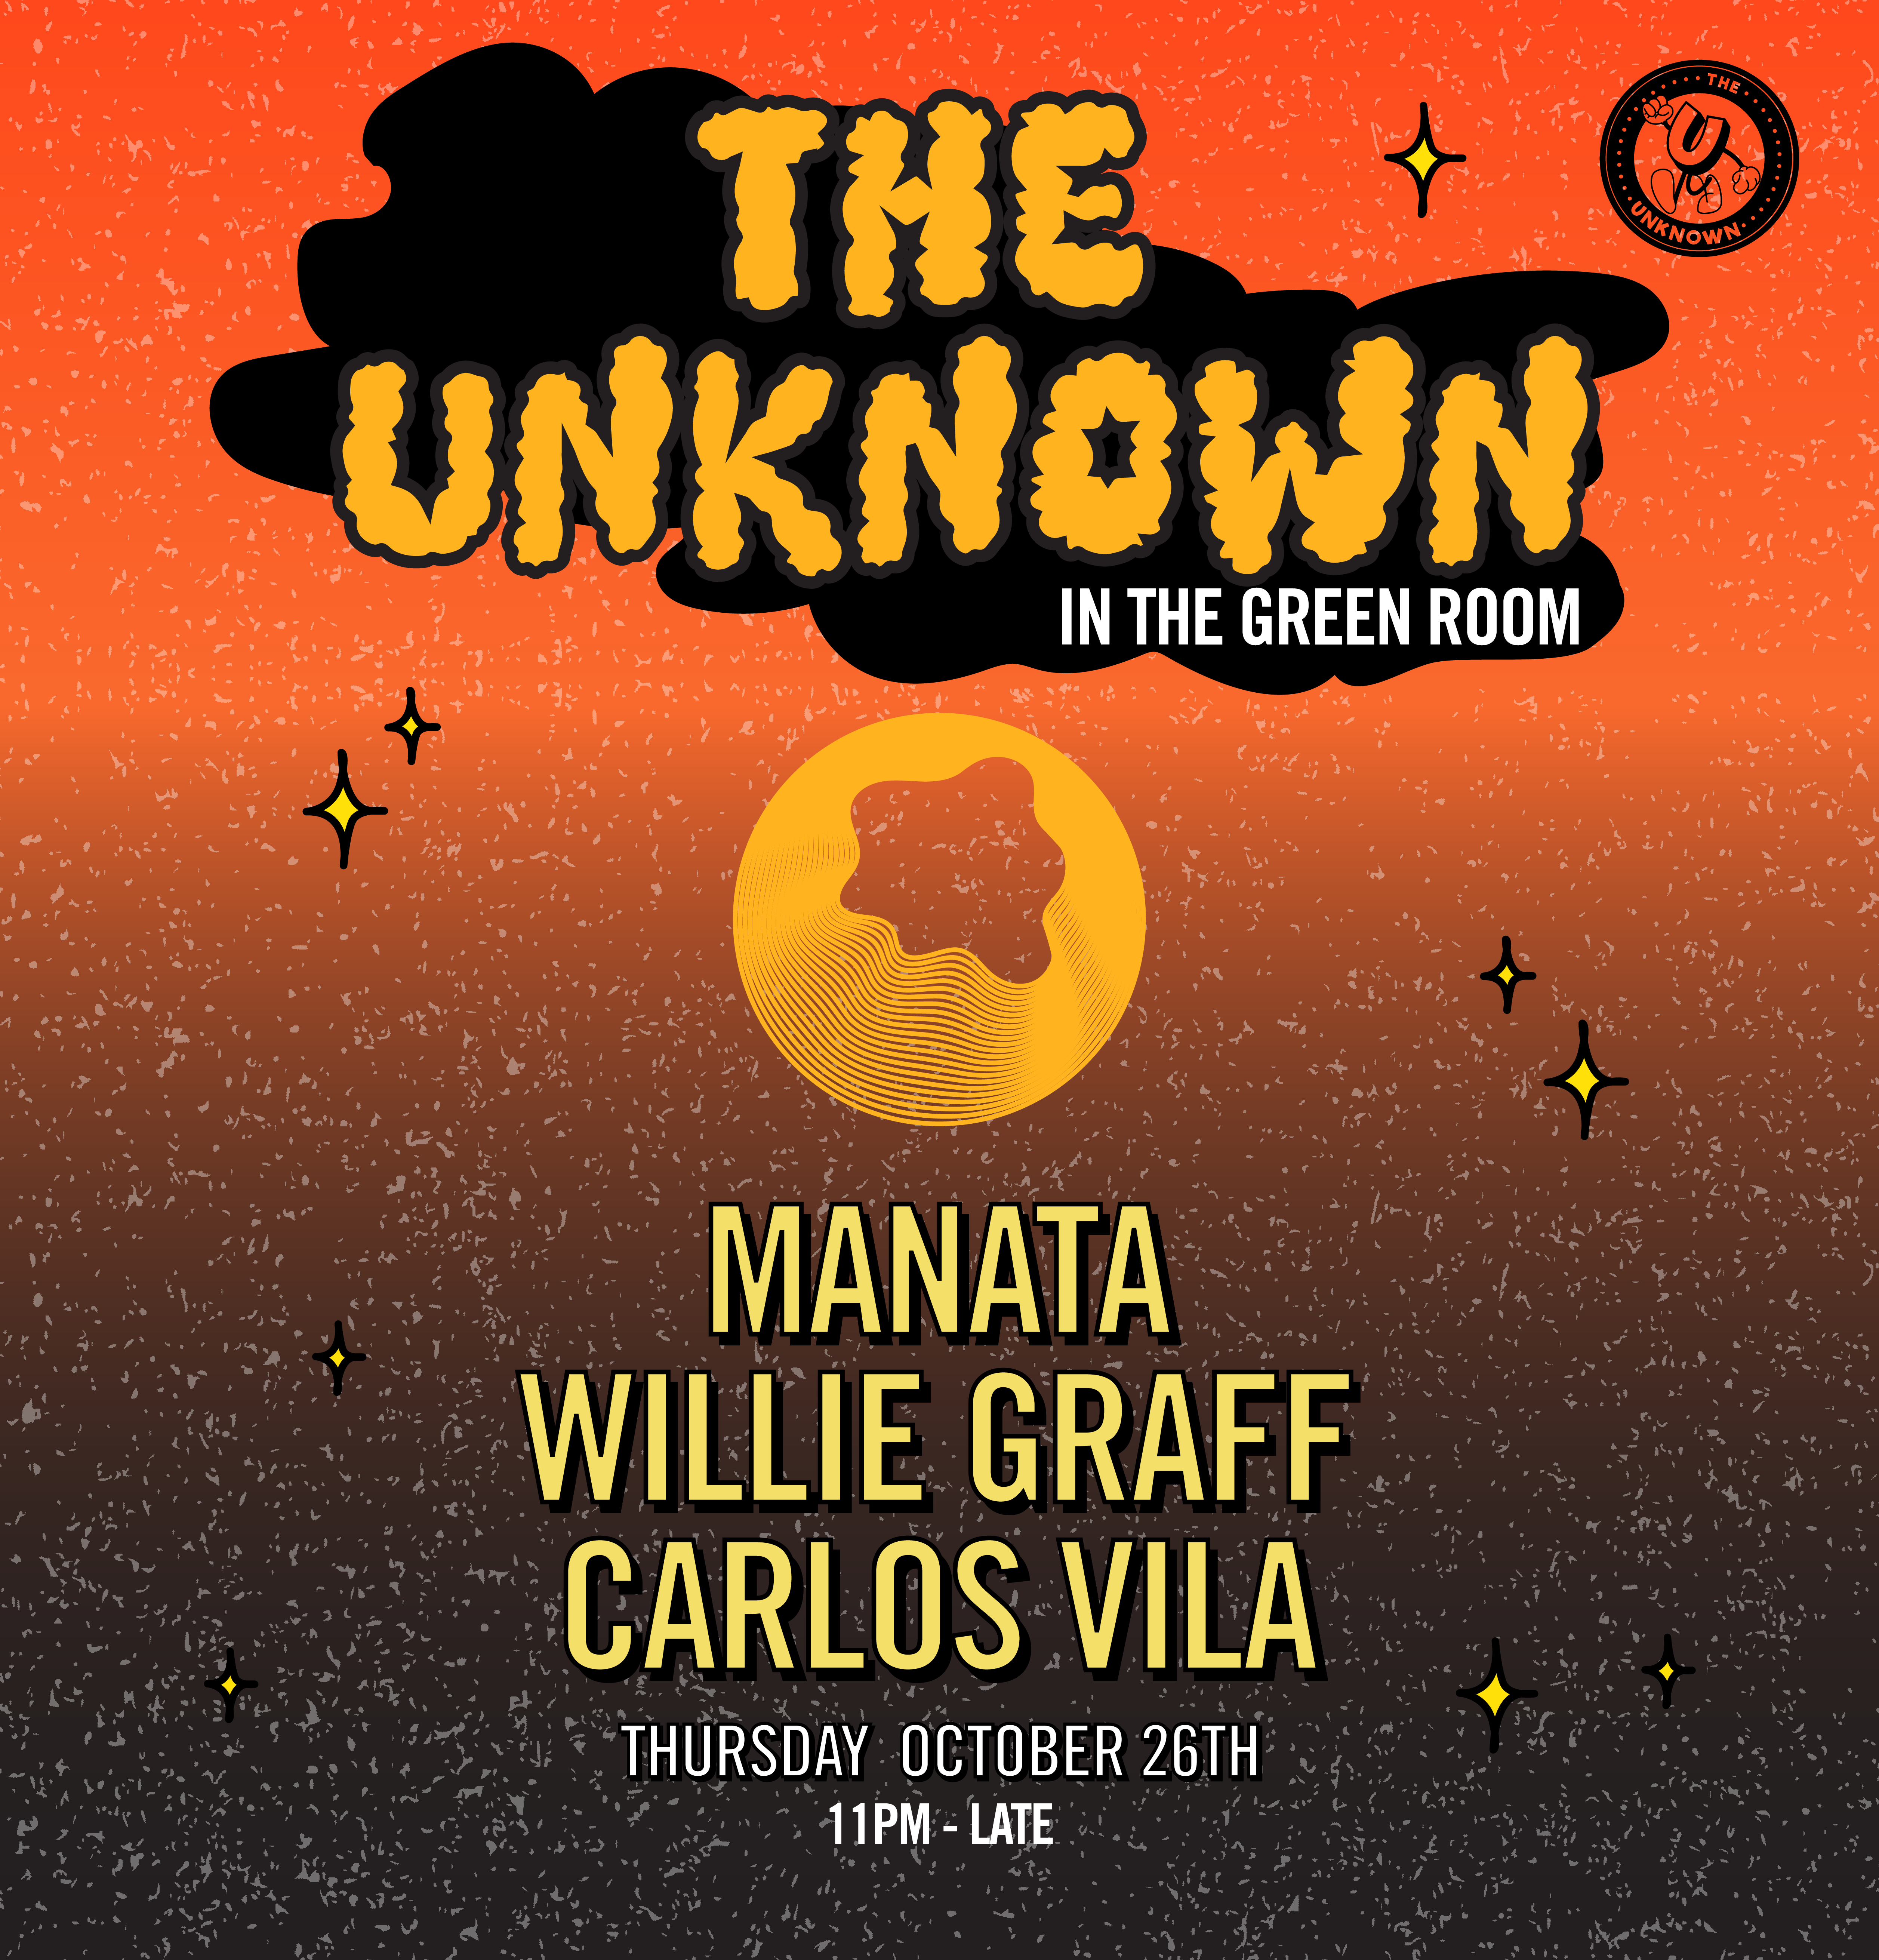 The Unknown ibiza with Manata, Willie Graff & Carlos Vila - フライヤー表